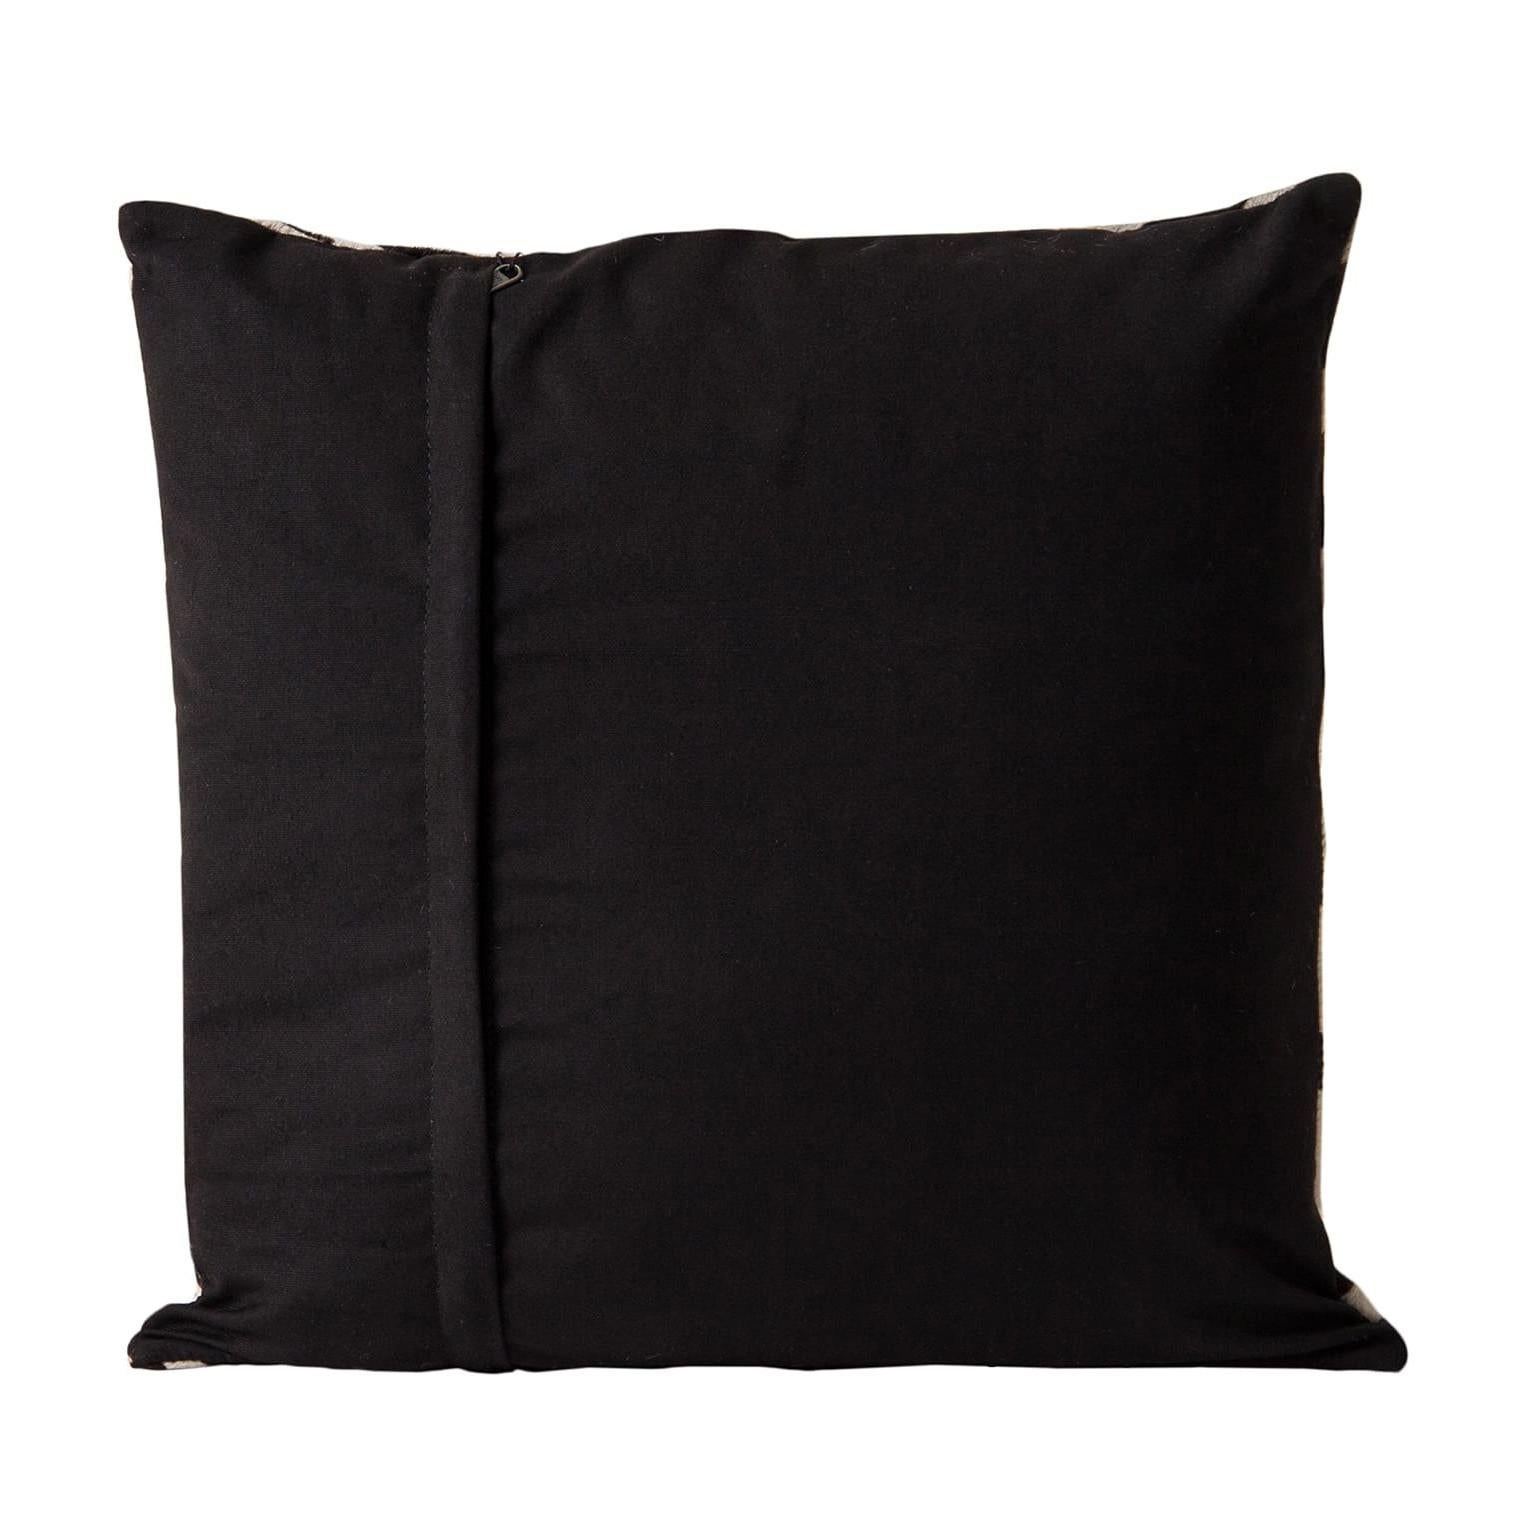 Black cowhide cushion.